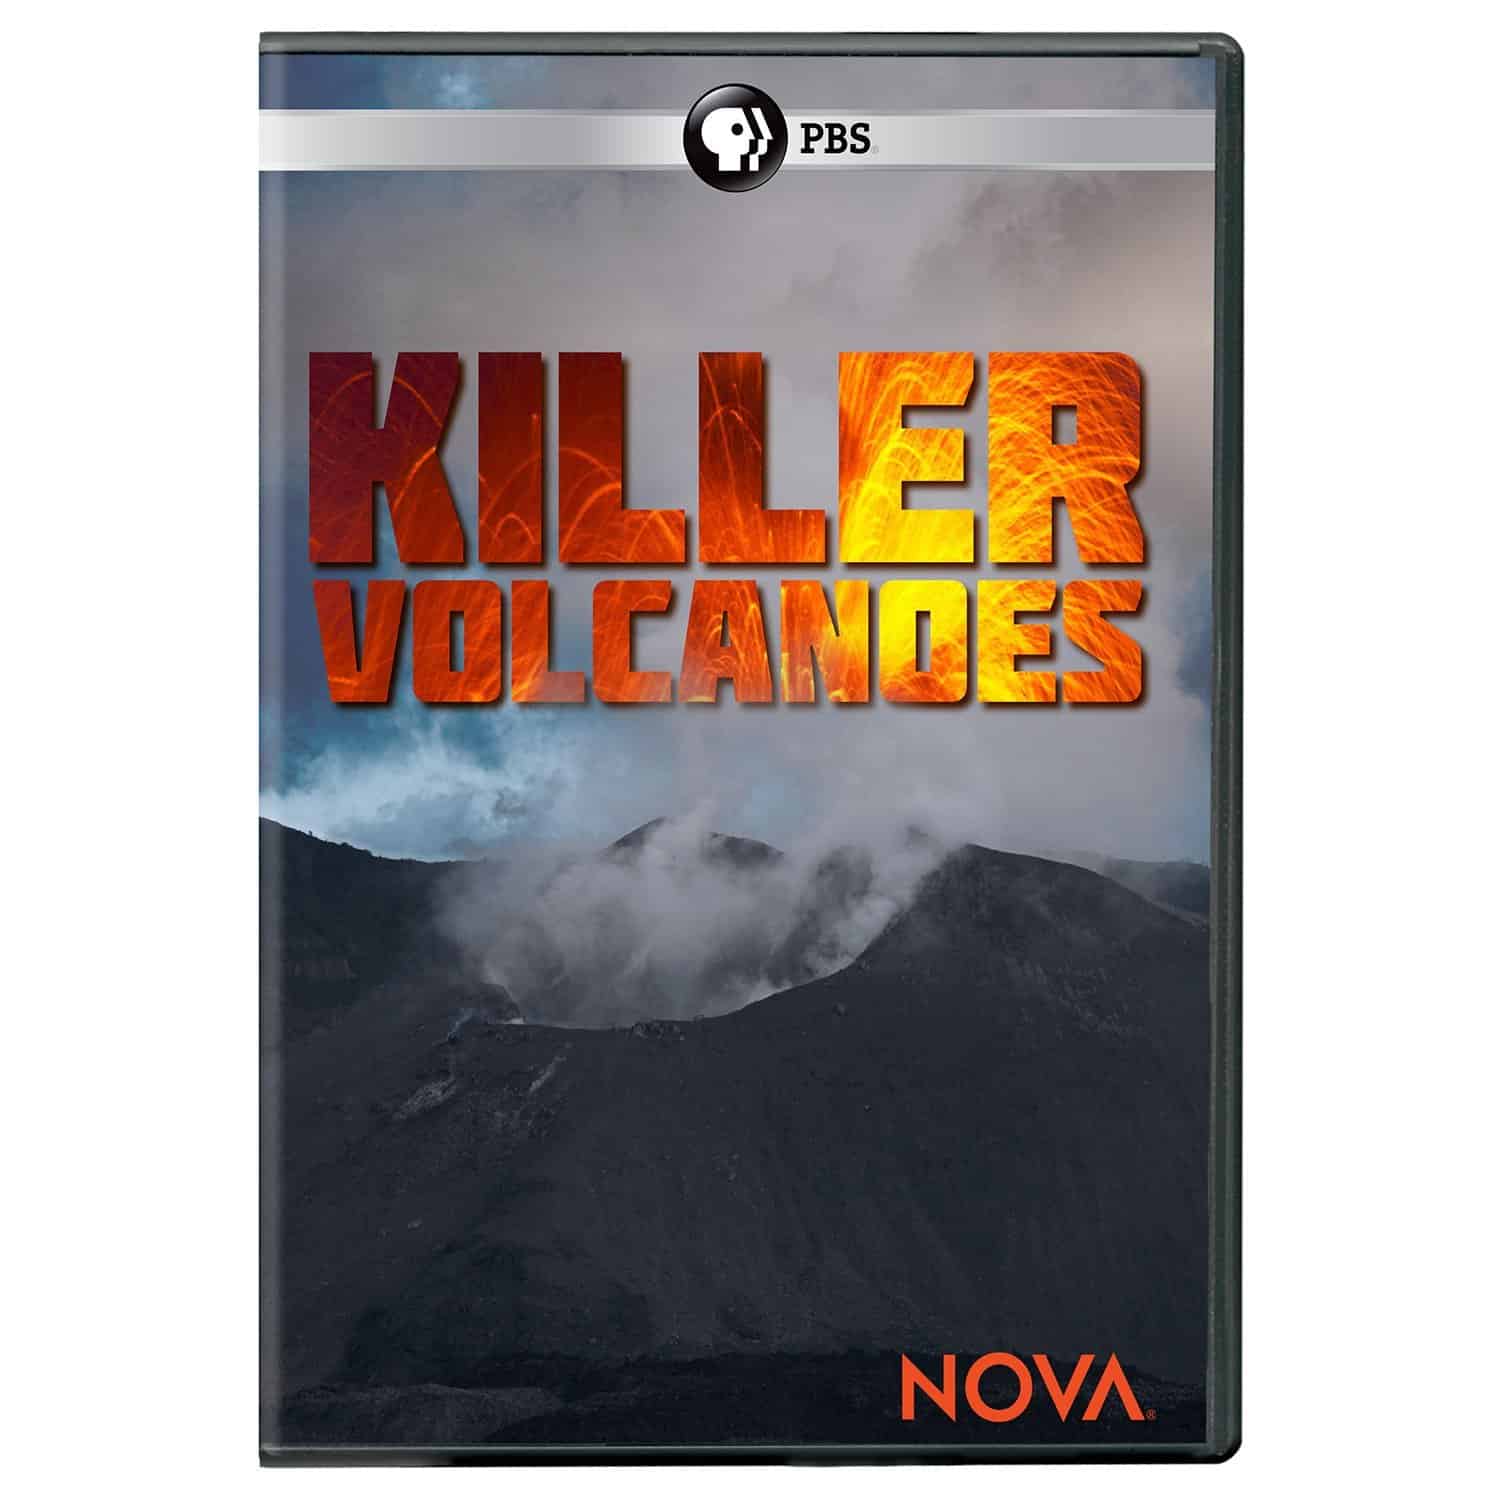 PBS Nova Killer Volcanoes on DVD